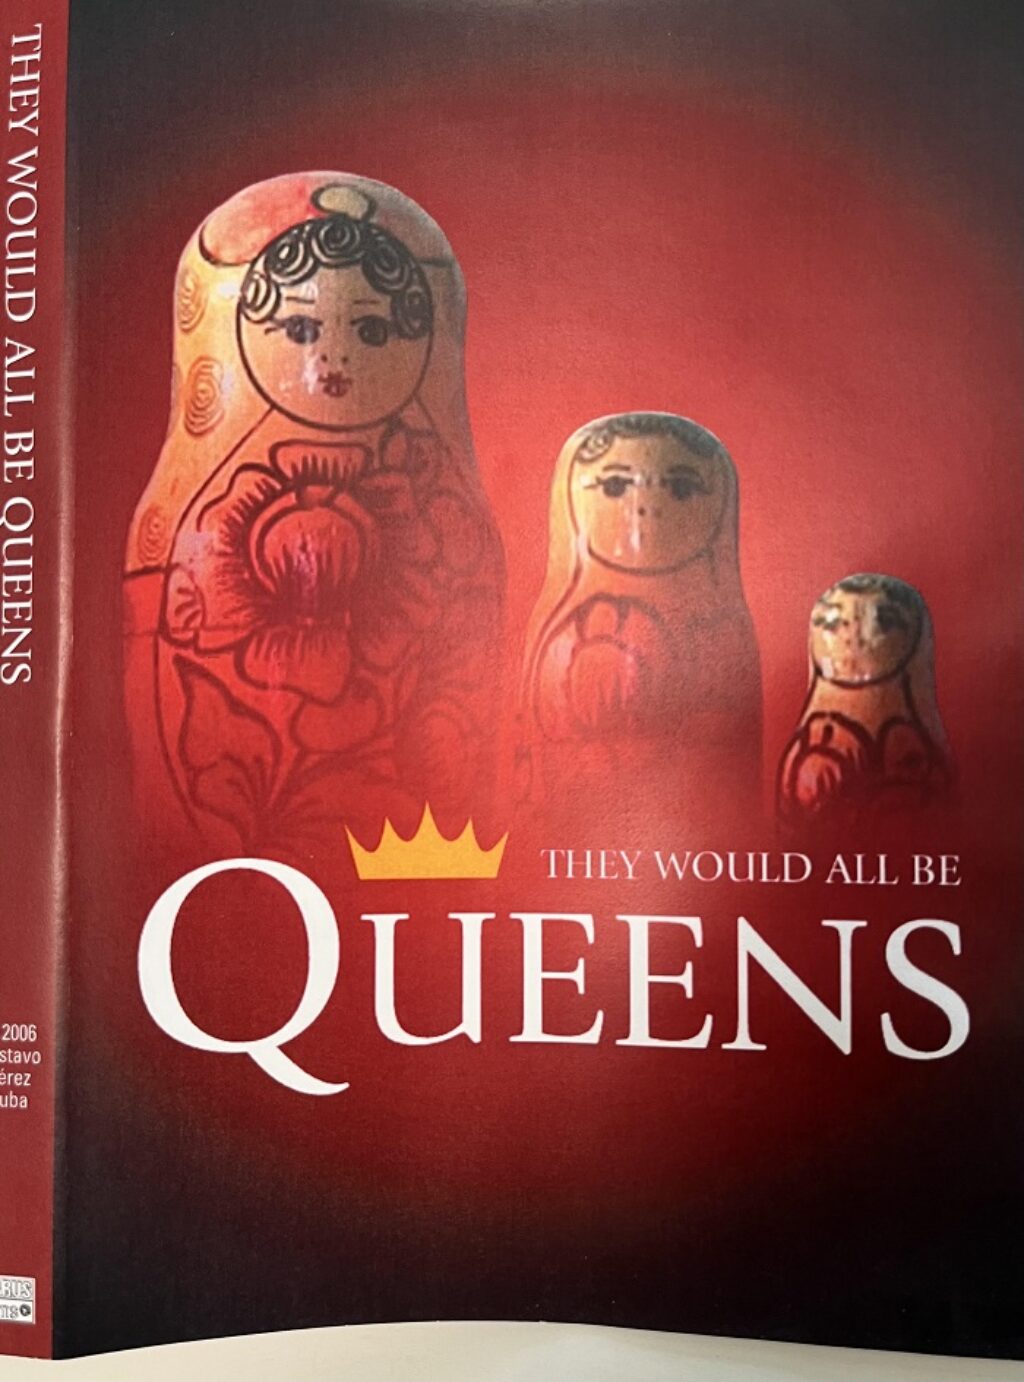 Cartel de la versión en inglés del documental Todas iban a ser reinas.